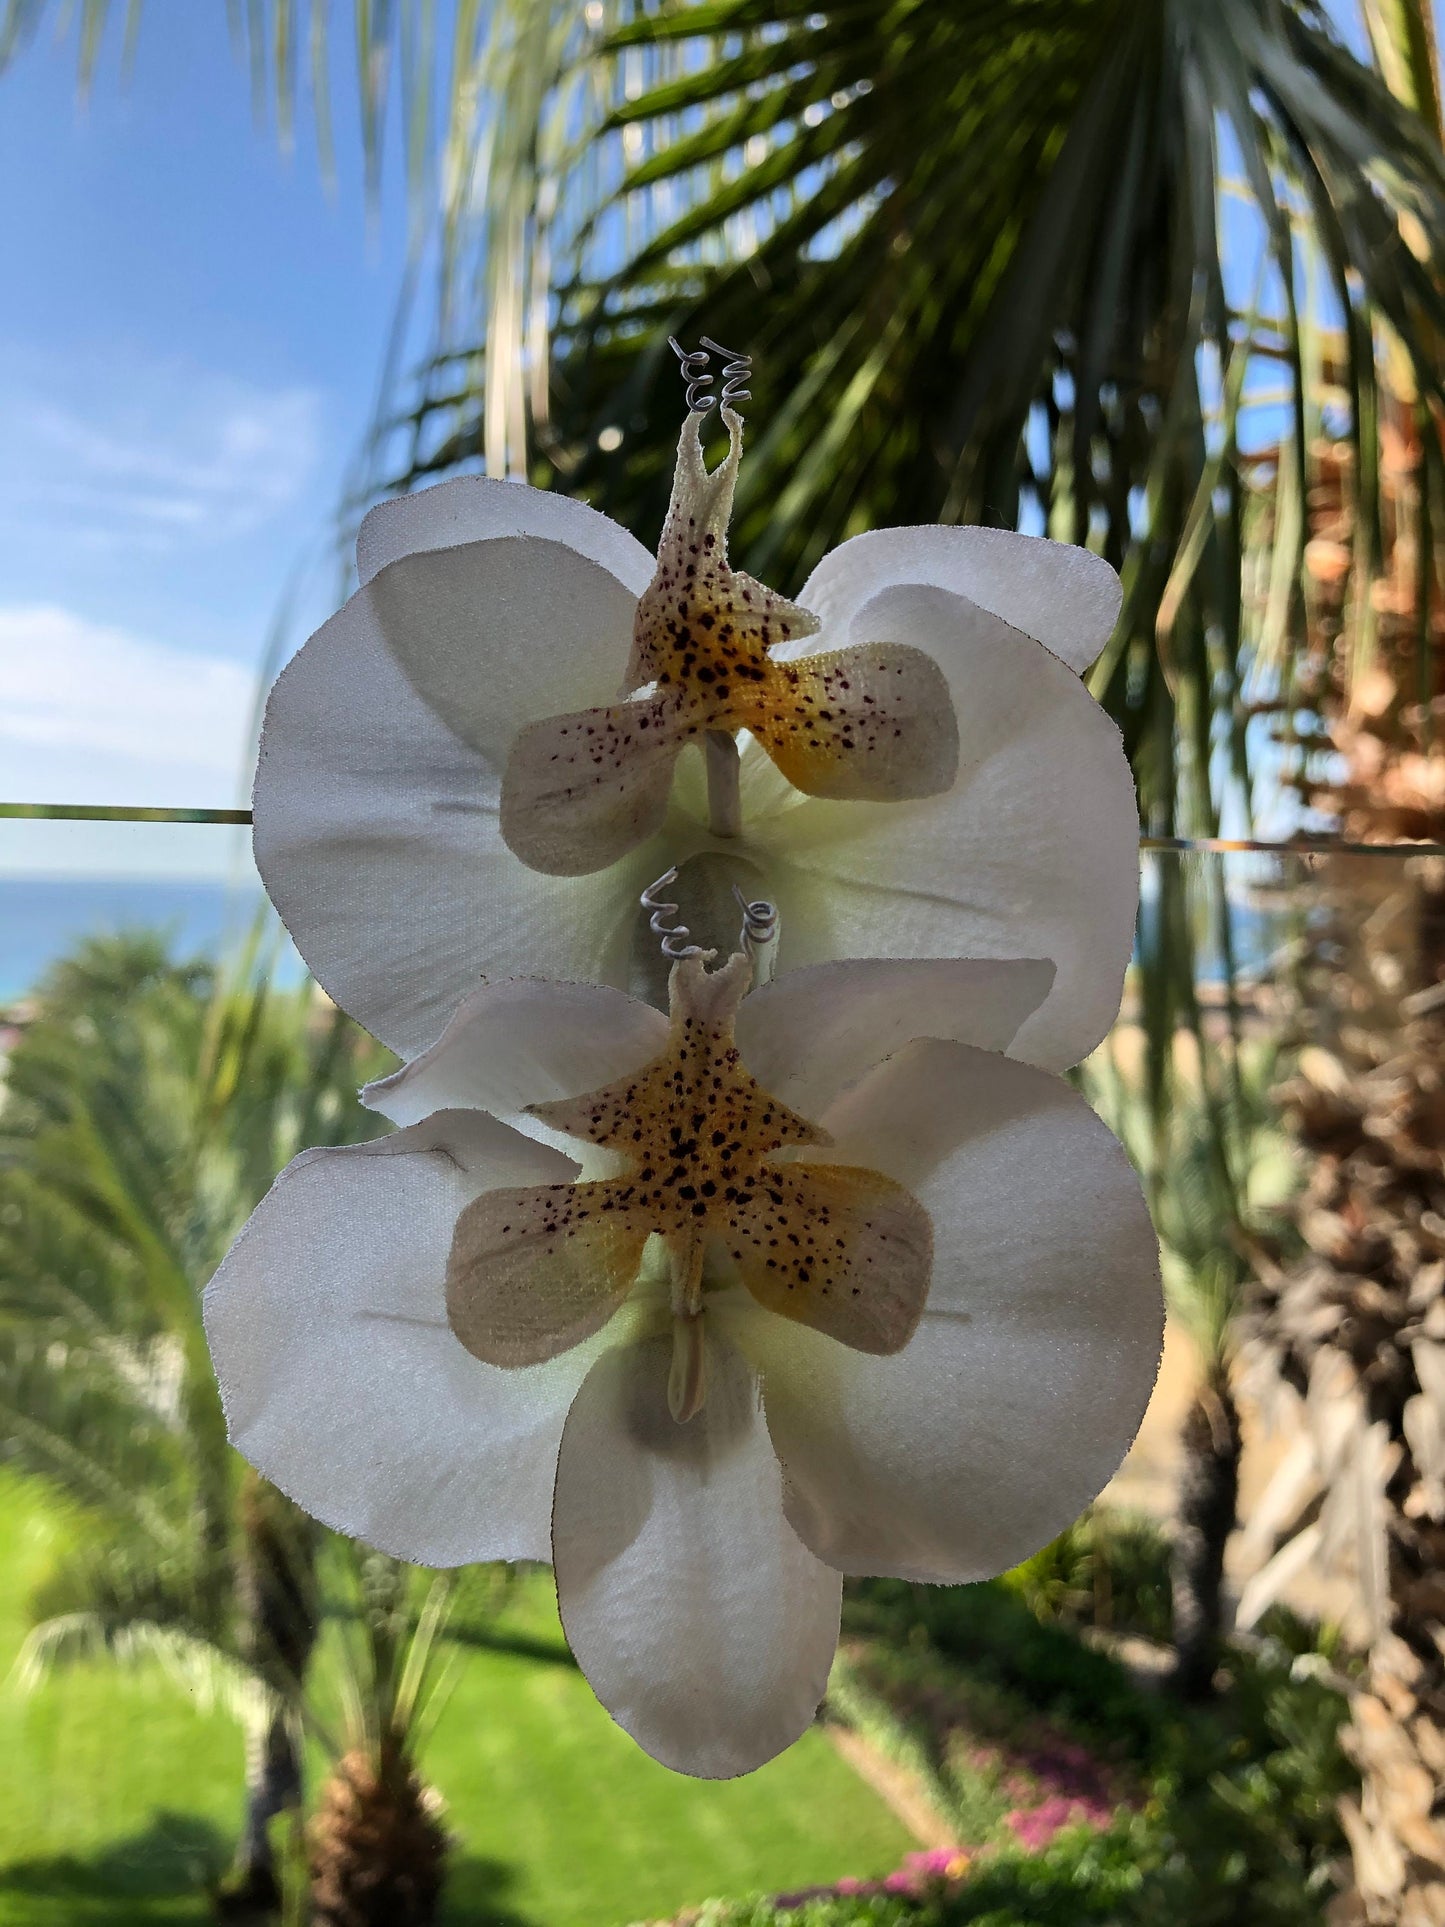 Phalaenopsis Orchidée Français Auto Barrette. Pour vos cheveux ! Karin's Garden – Fabriqué aux États-Unis – Prêt pour les vacances tropicales – La vie comme des orchidées